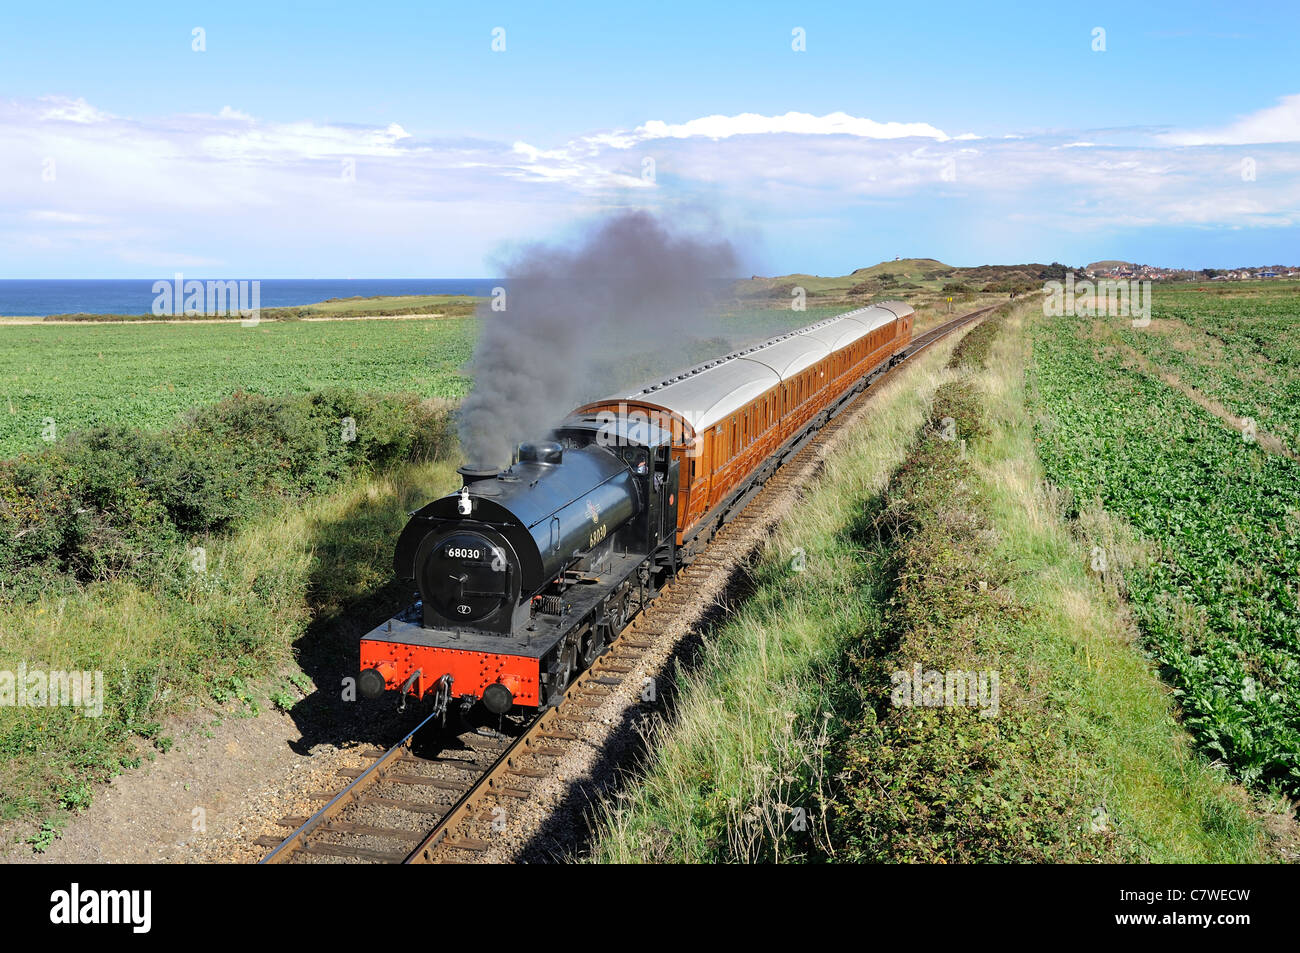 Train à vapeur '68030' austérité Hunslet 3777 ex-coal board saddle tank, North Norfolk Railway, ligne de pavot, UK, Septembre Banque D'Images